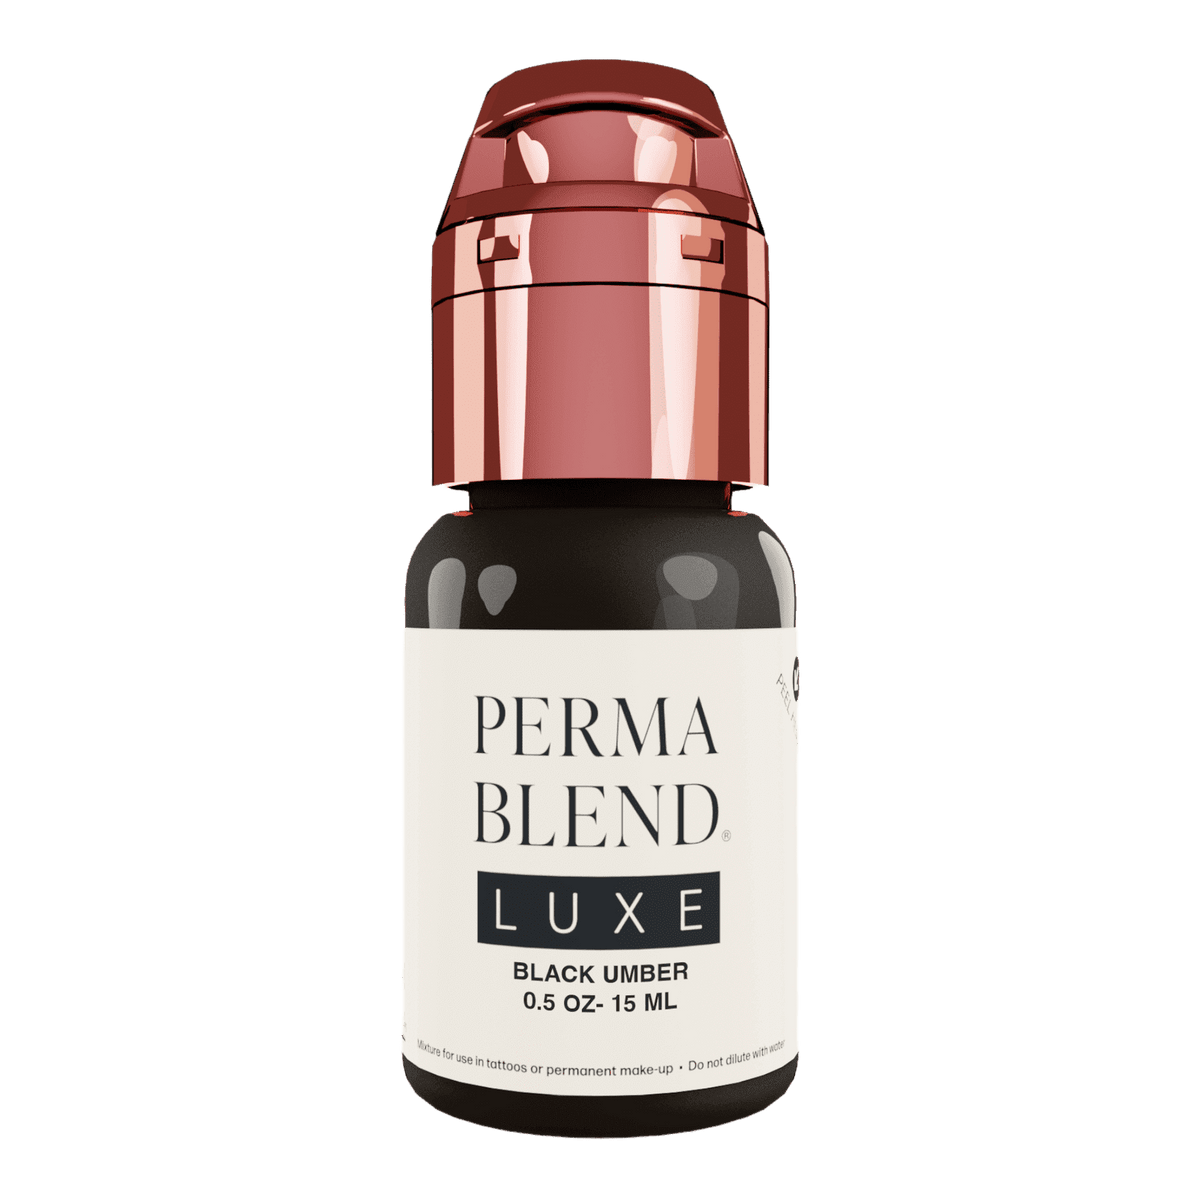 Perma Blend Luxe Black Umber